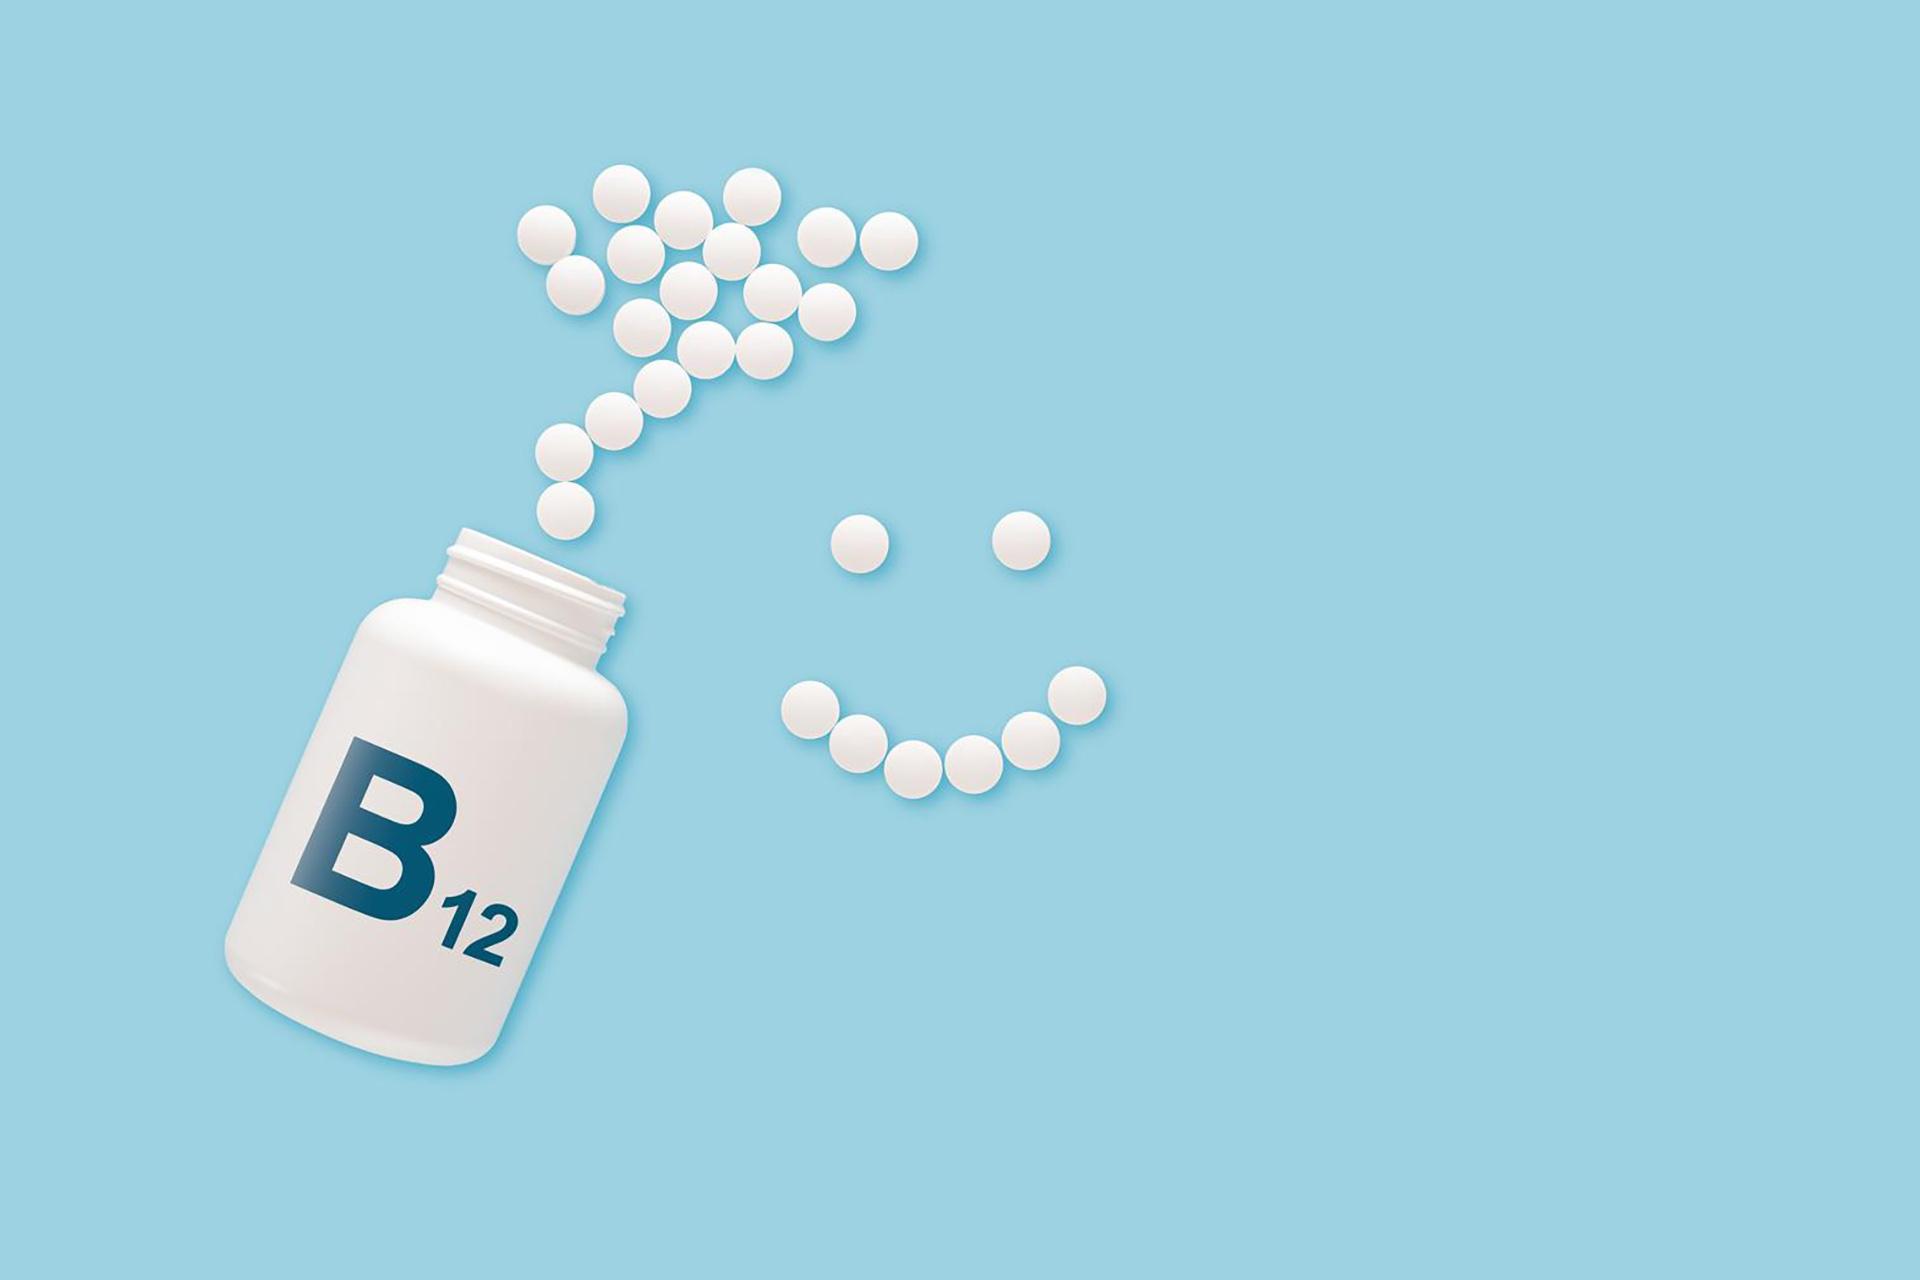 व्हिटॅमिन बी 12 ची कमतरता: त्याबद्दल जाणून घेण्यासाठी 5 महत्वाच्या गोष्टी